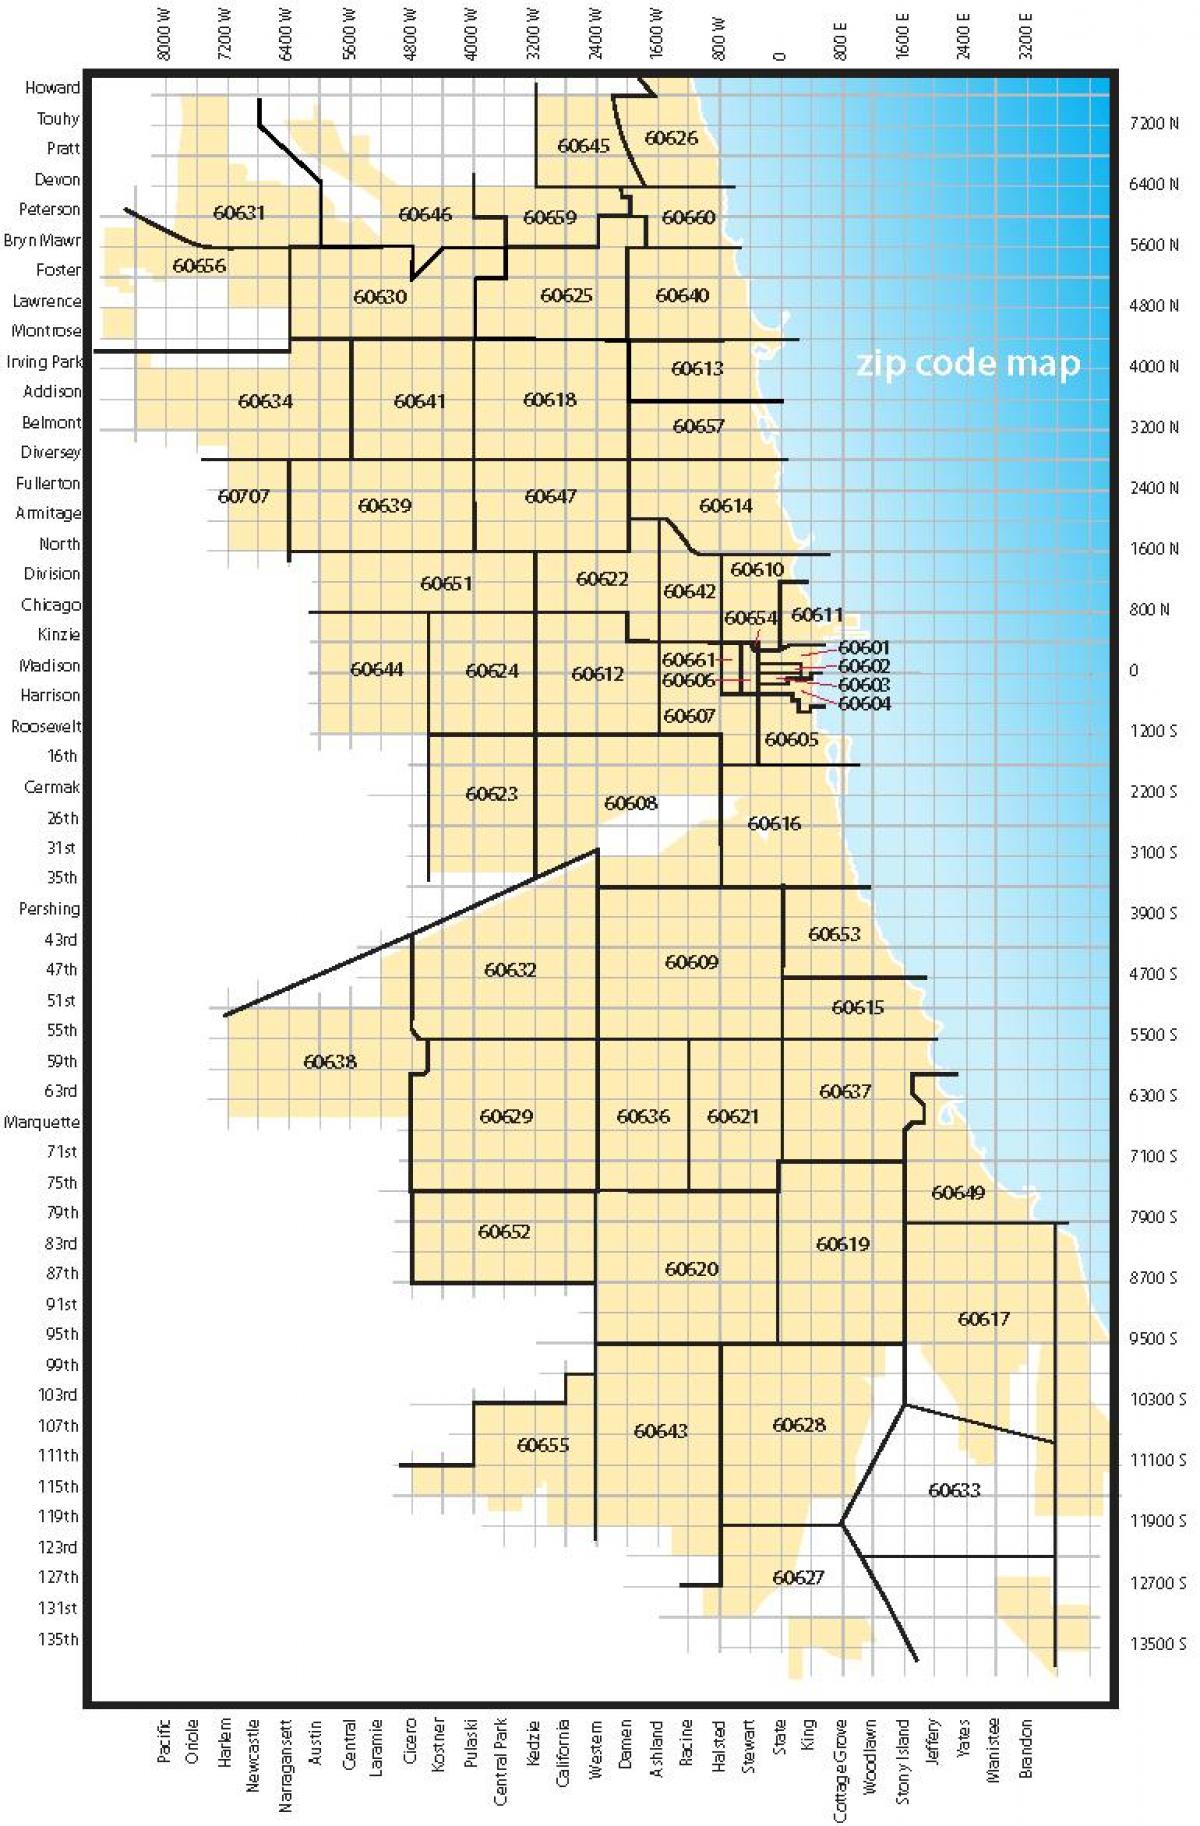 Zona di Chicago code mappa